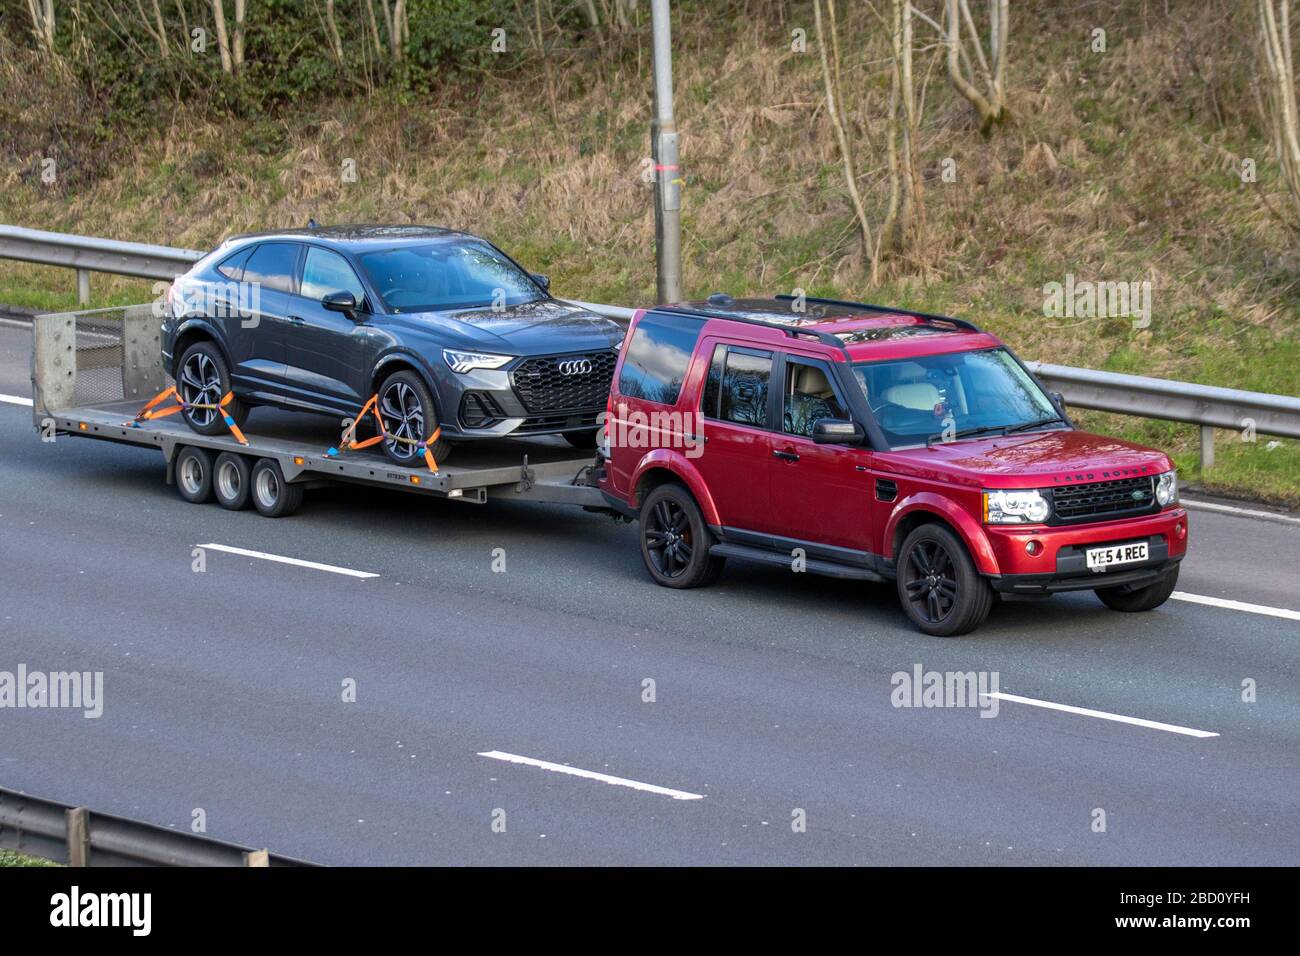 2013 rojo Land Rover Discovery HSE SDV6 remolque automóvil Mercedes Benz SUV Audi Q8 S línea 50 TDI Quattro en remolque; vehículos en movimiento, conducción de vehículos en carreteras del Reino Unido, motores, conducción en la autopista M6 Foto de stock